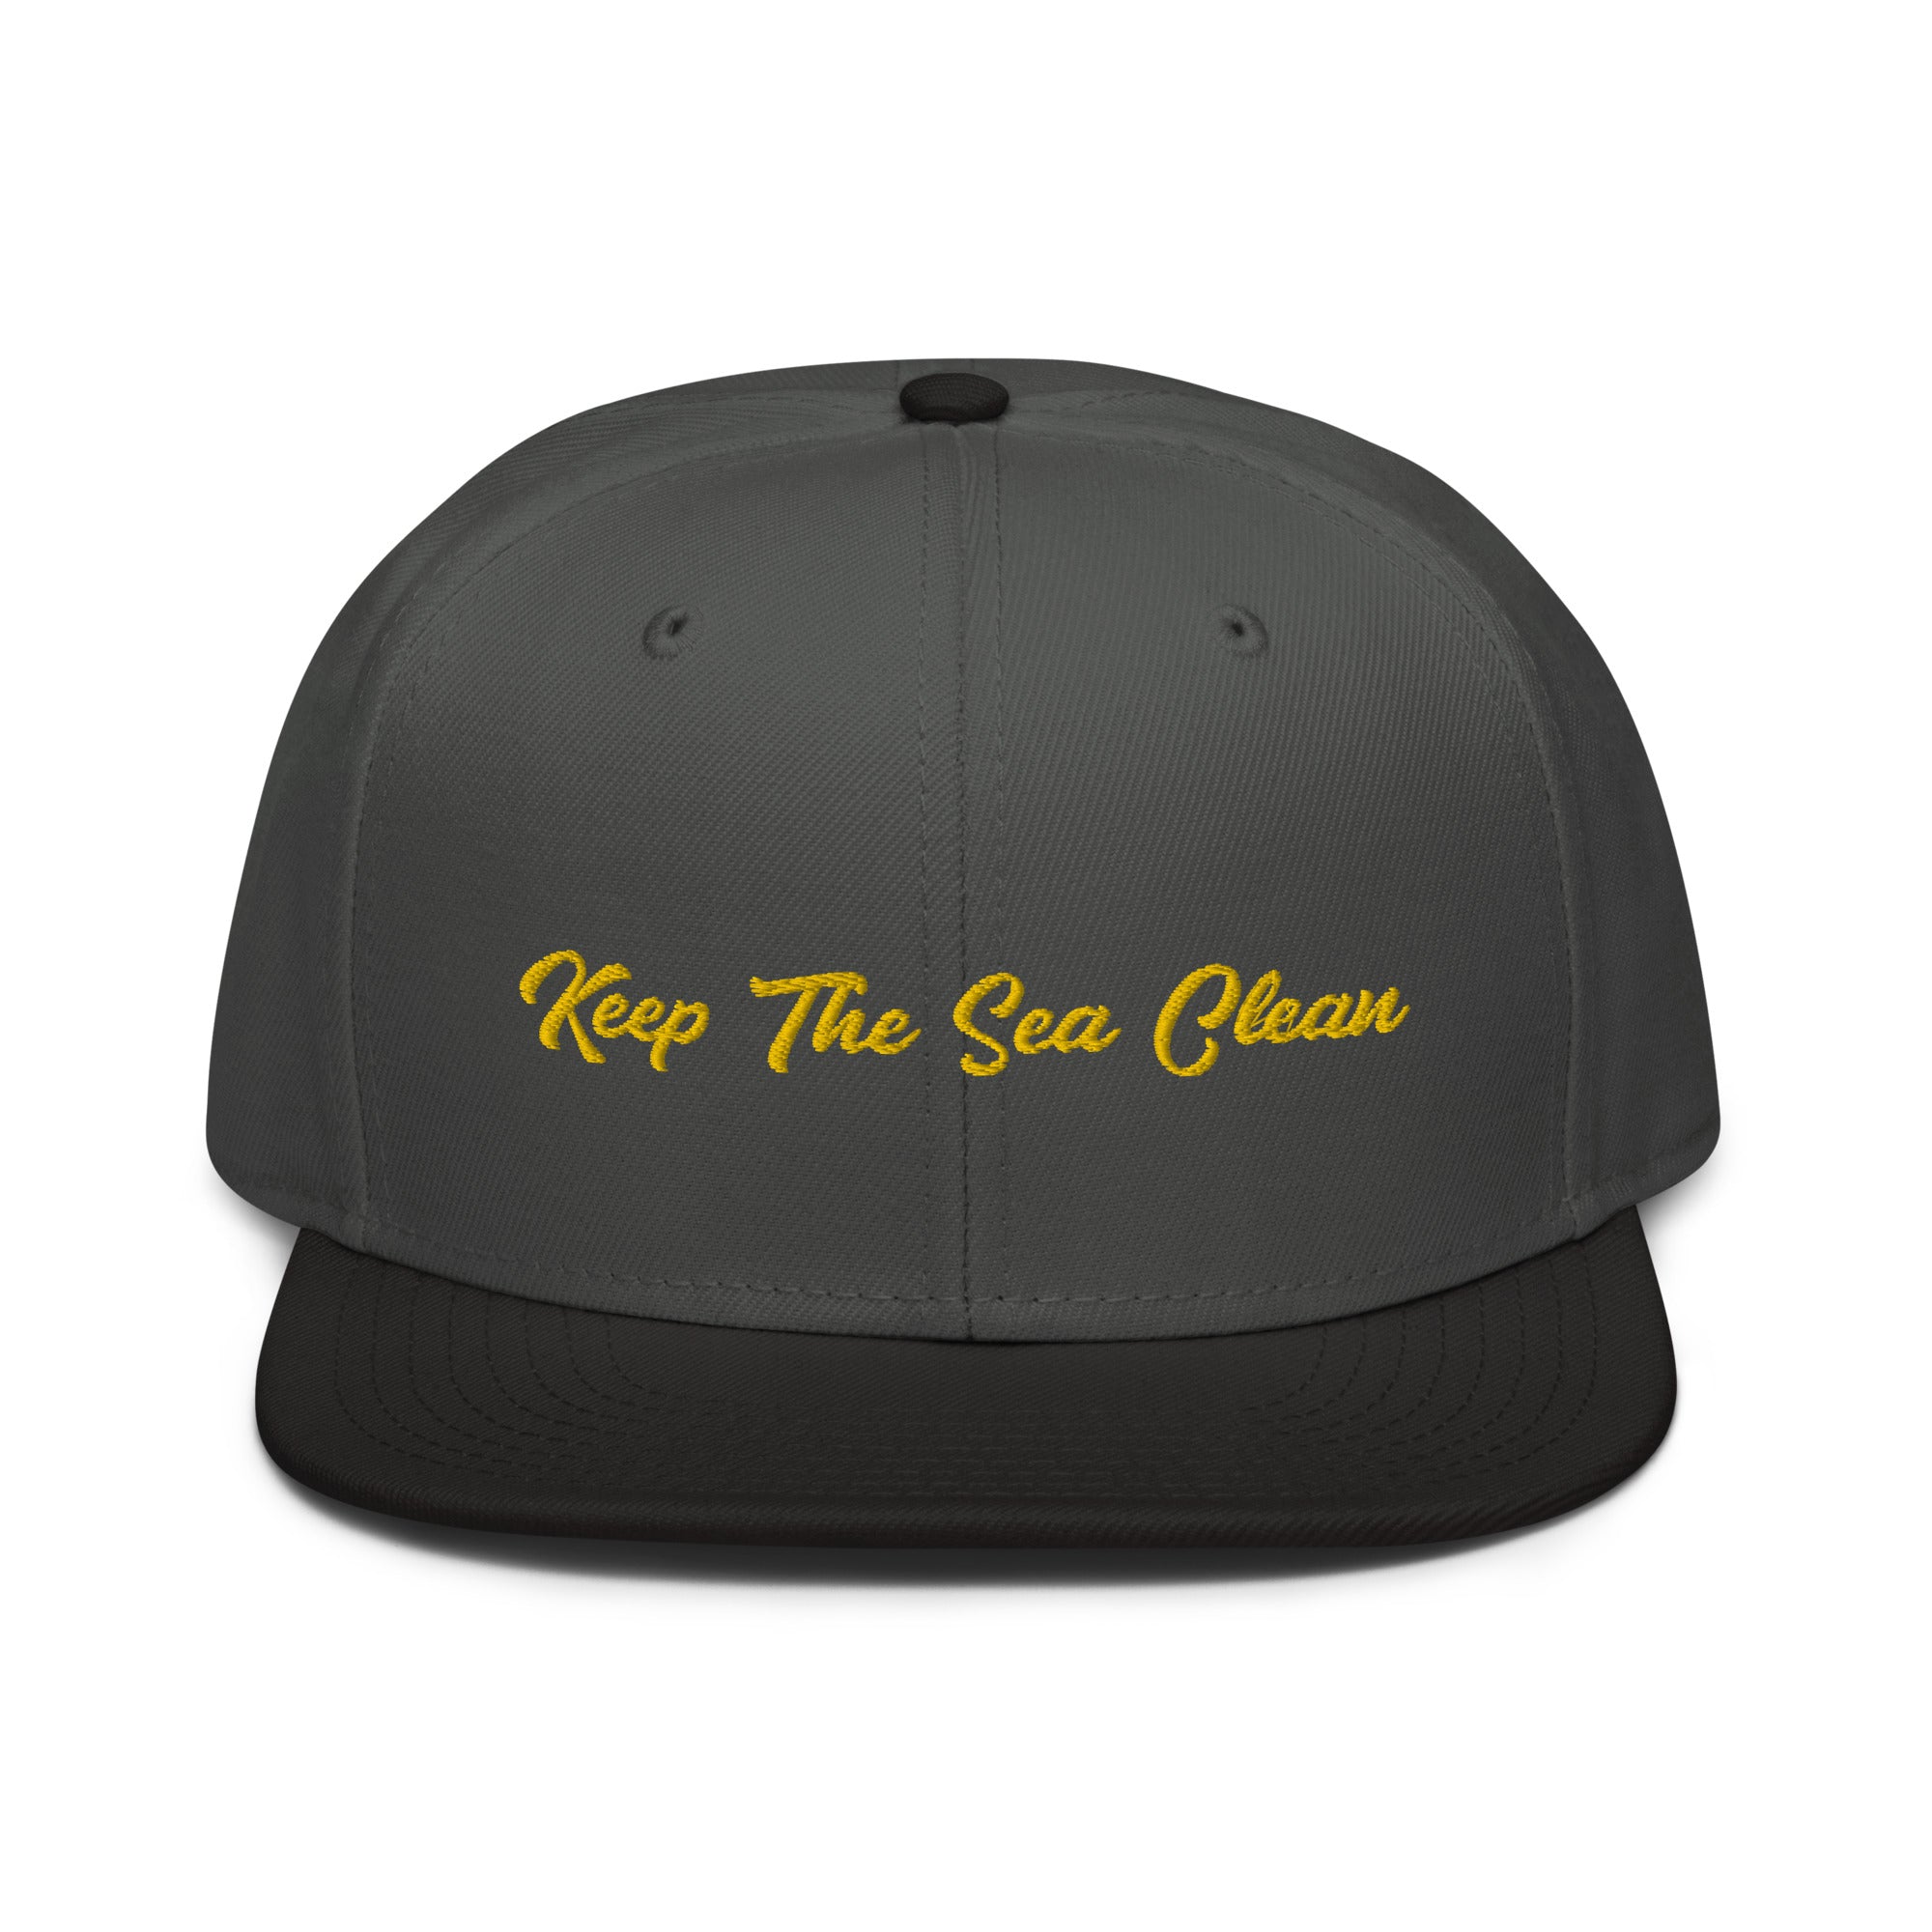 Casquette Snapback Otto Cap bicolore Keep The Sea Clean